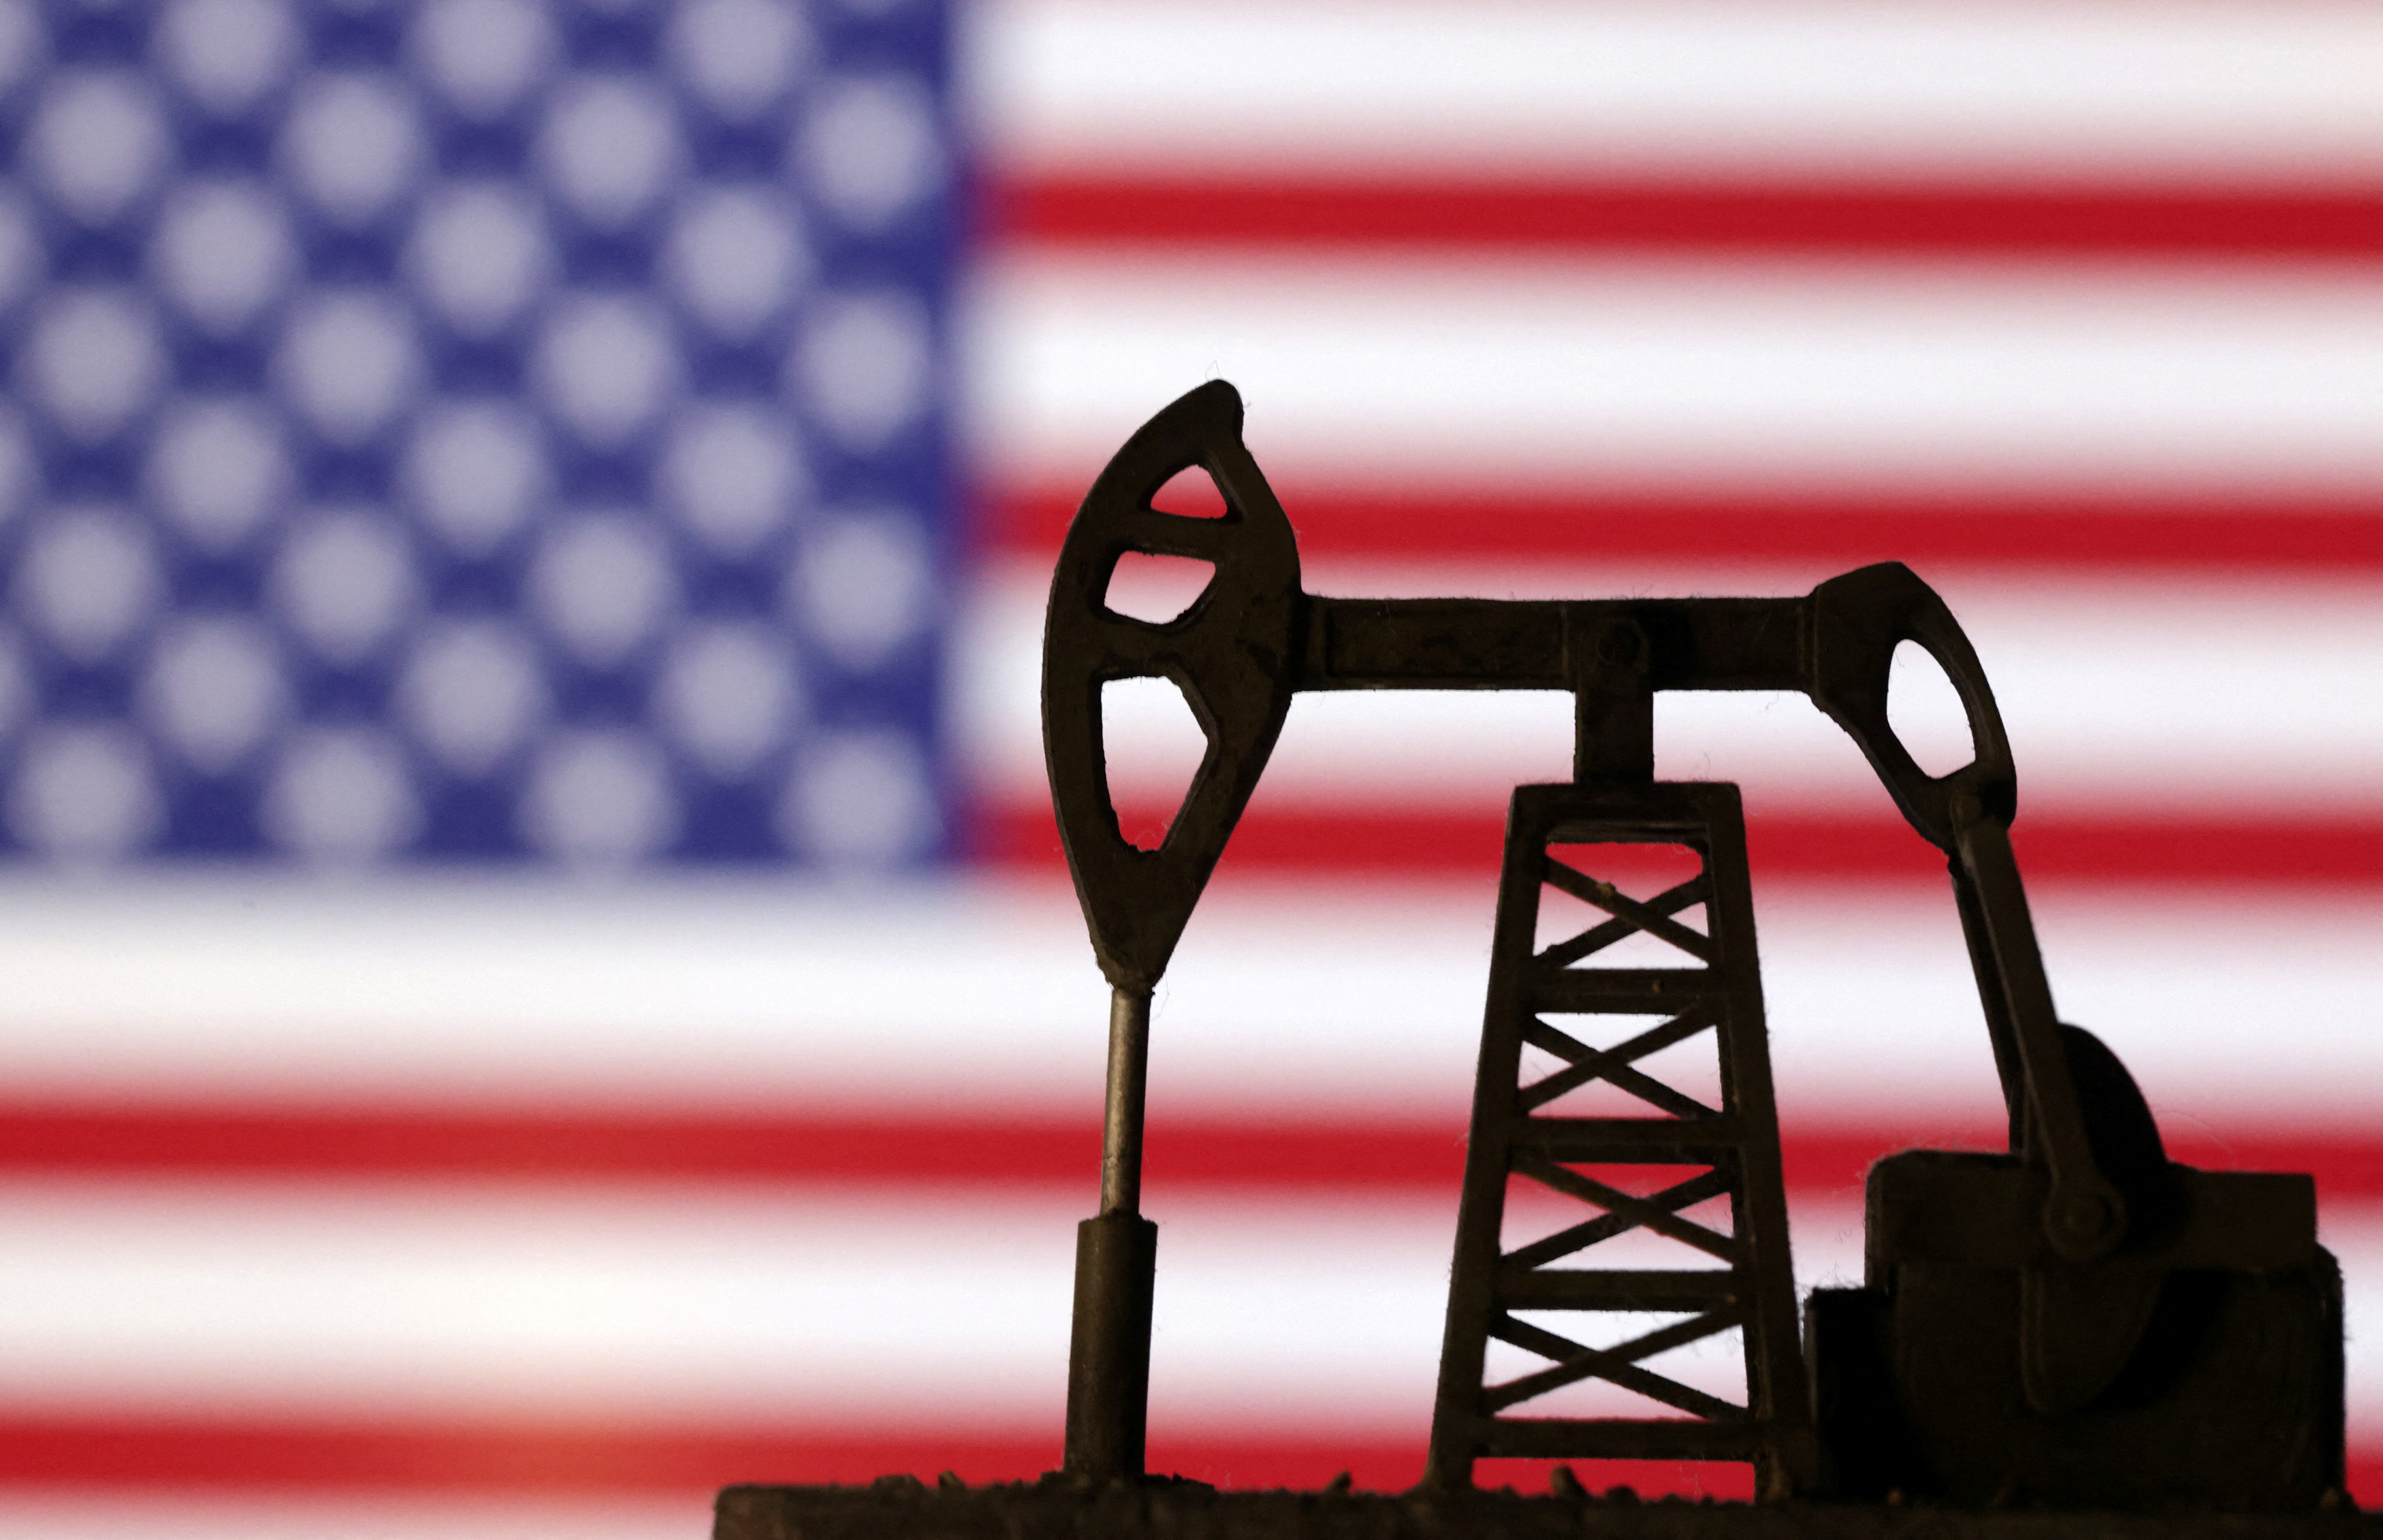 Illustration shows Oil pump jack and U.S. flag